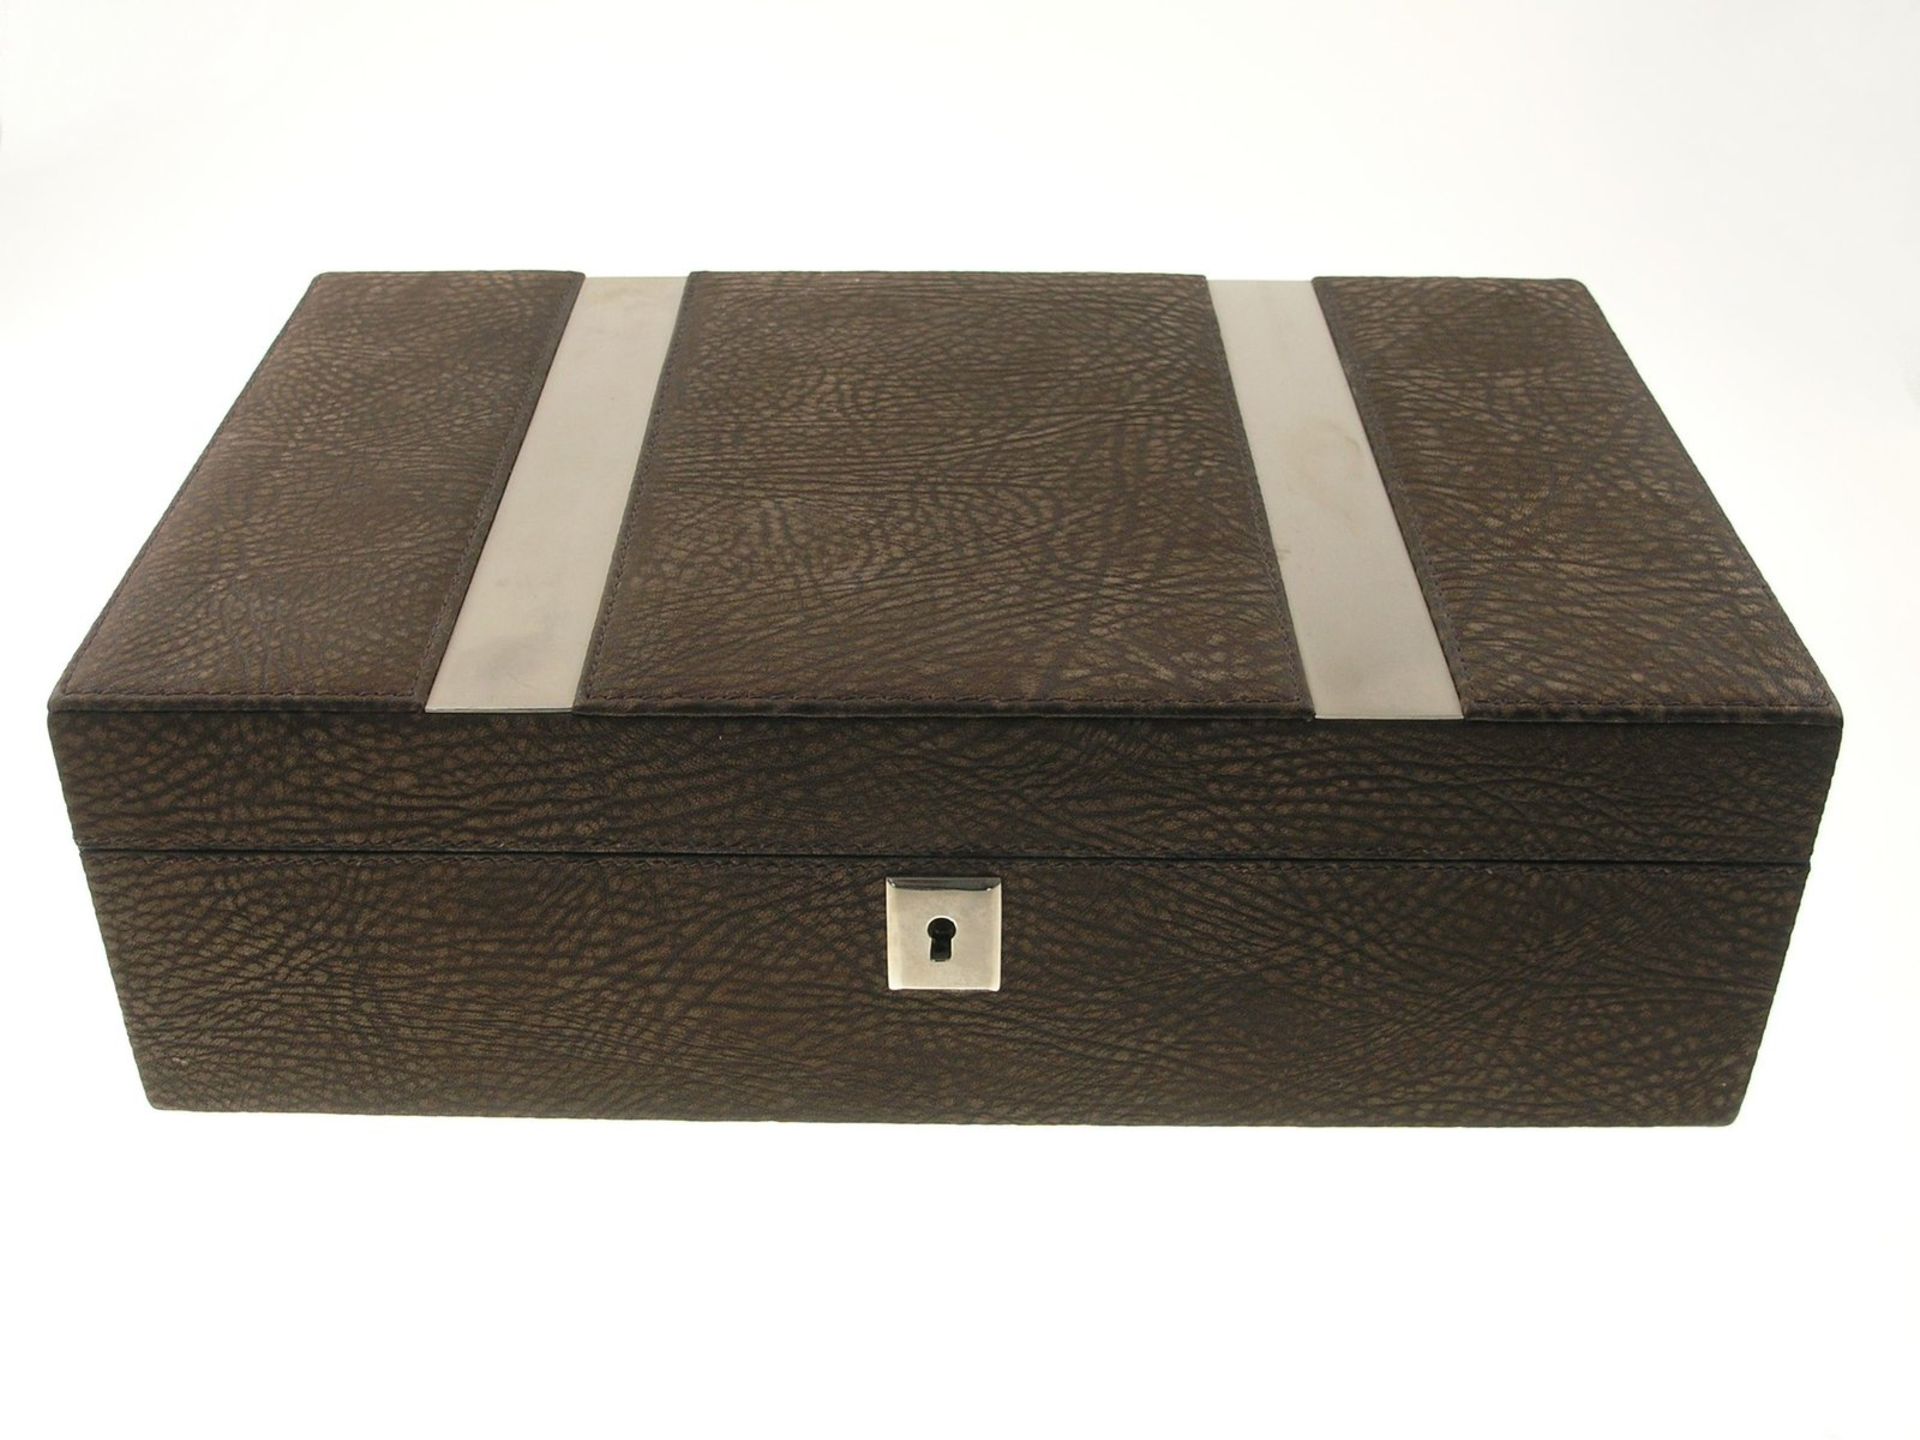 Humidor, vintageCa. 30 × 19 × 9cm, Holz und Leder, eingebautes Hygrometer, vermutlich 60er Jahre, - Bild 2 aus 2